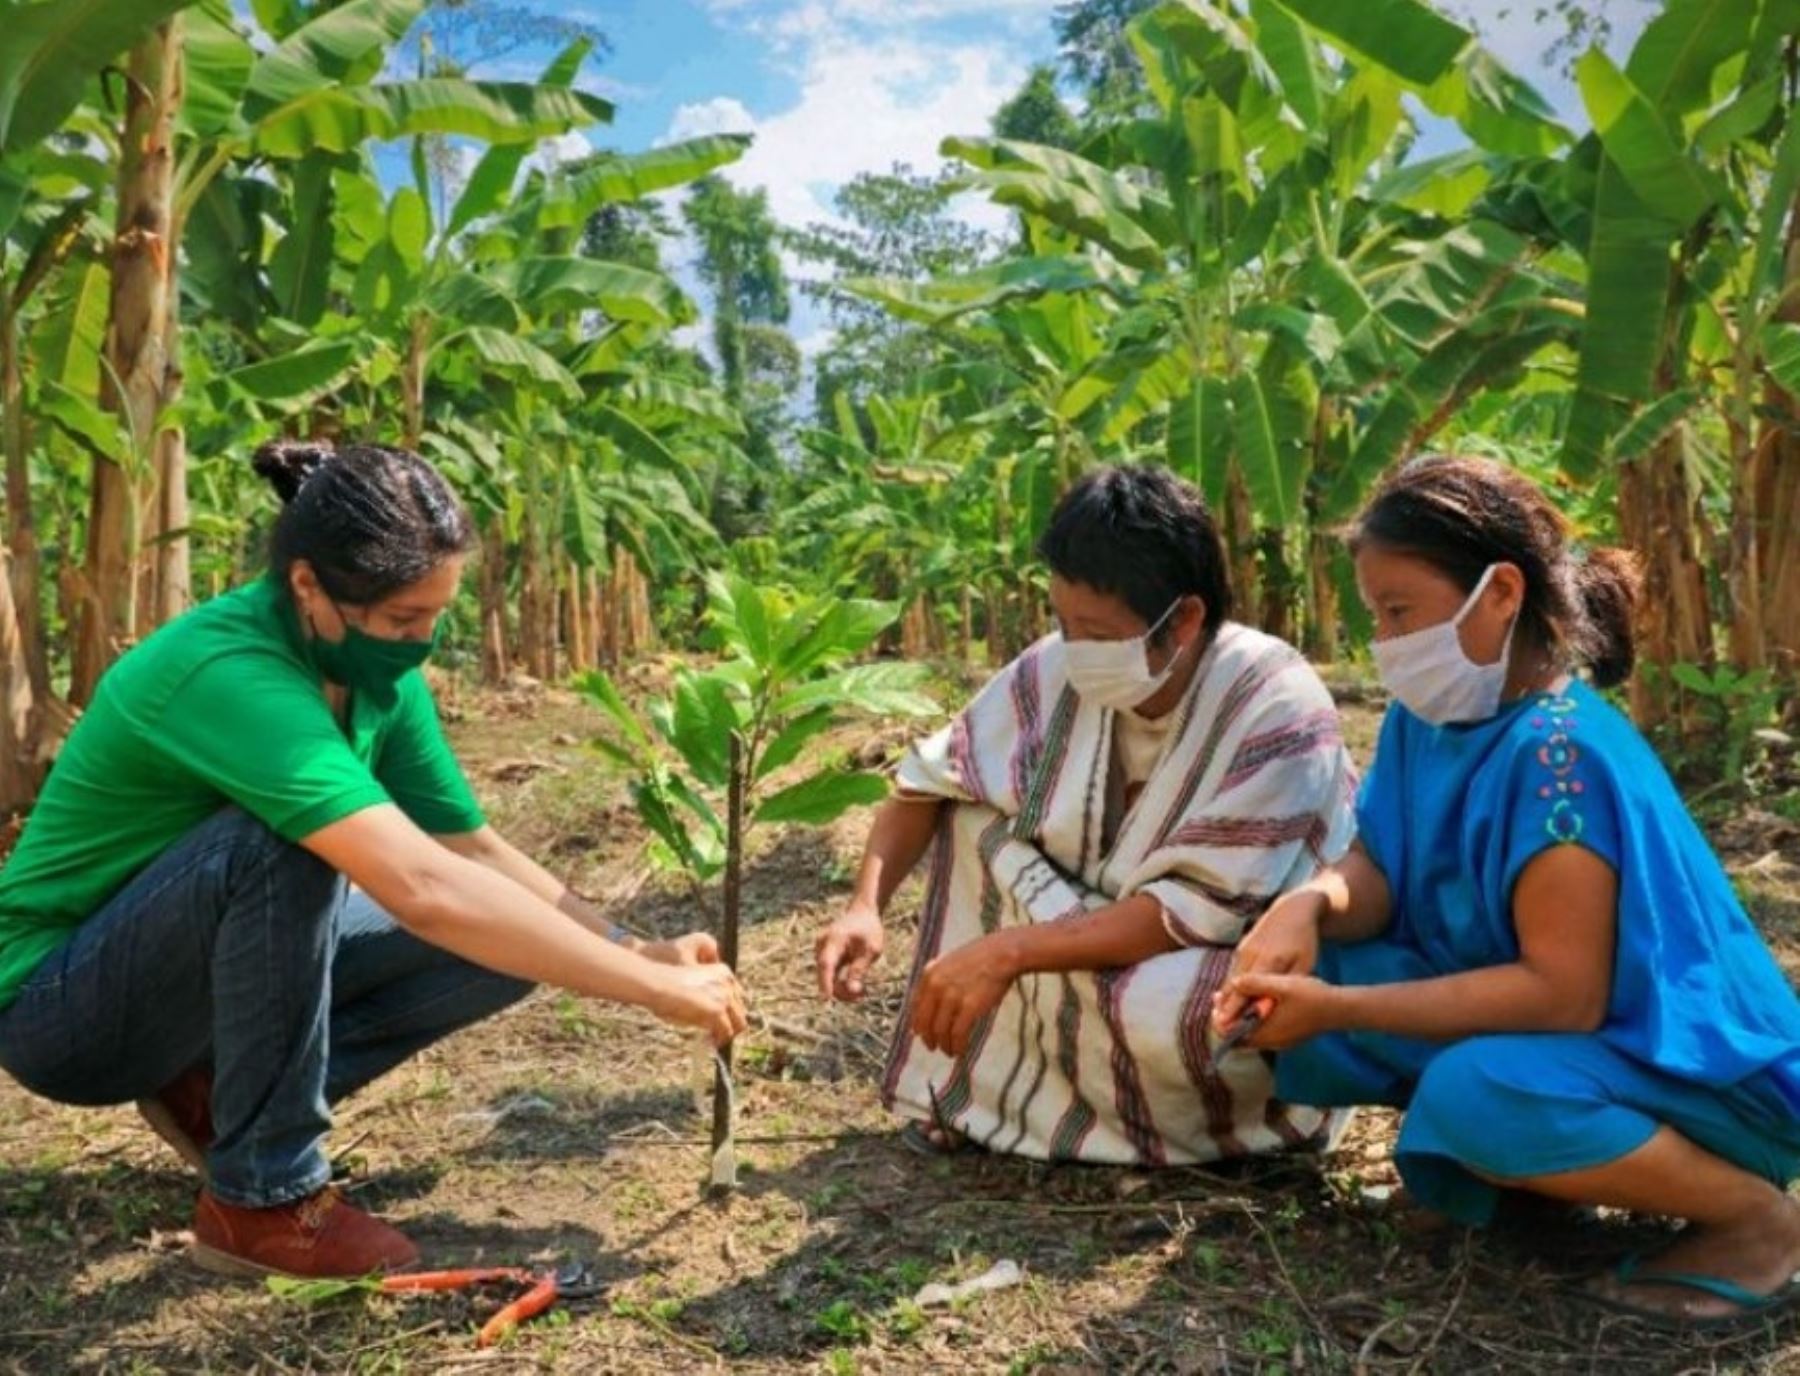 Cerca de 2,500 pobladores de más de un centenar de comunidades indígenas ubicadas en el ámbito del Vraem se benefician con los proyectos de cacao, café y peces amazónicos que ejecuta y financia Devida. ANDINA/Difusión